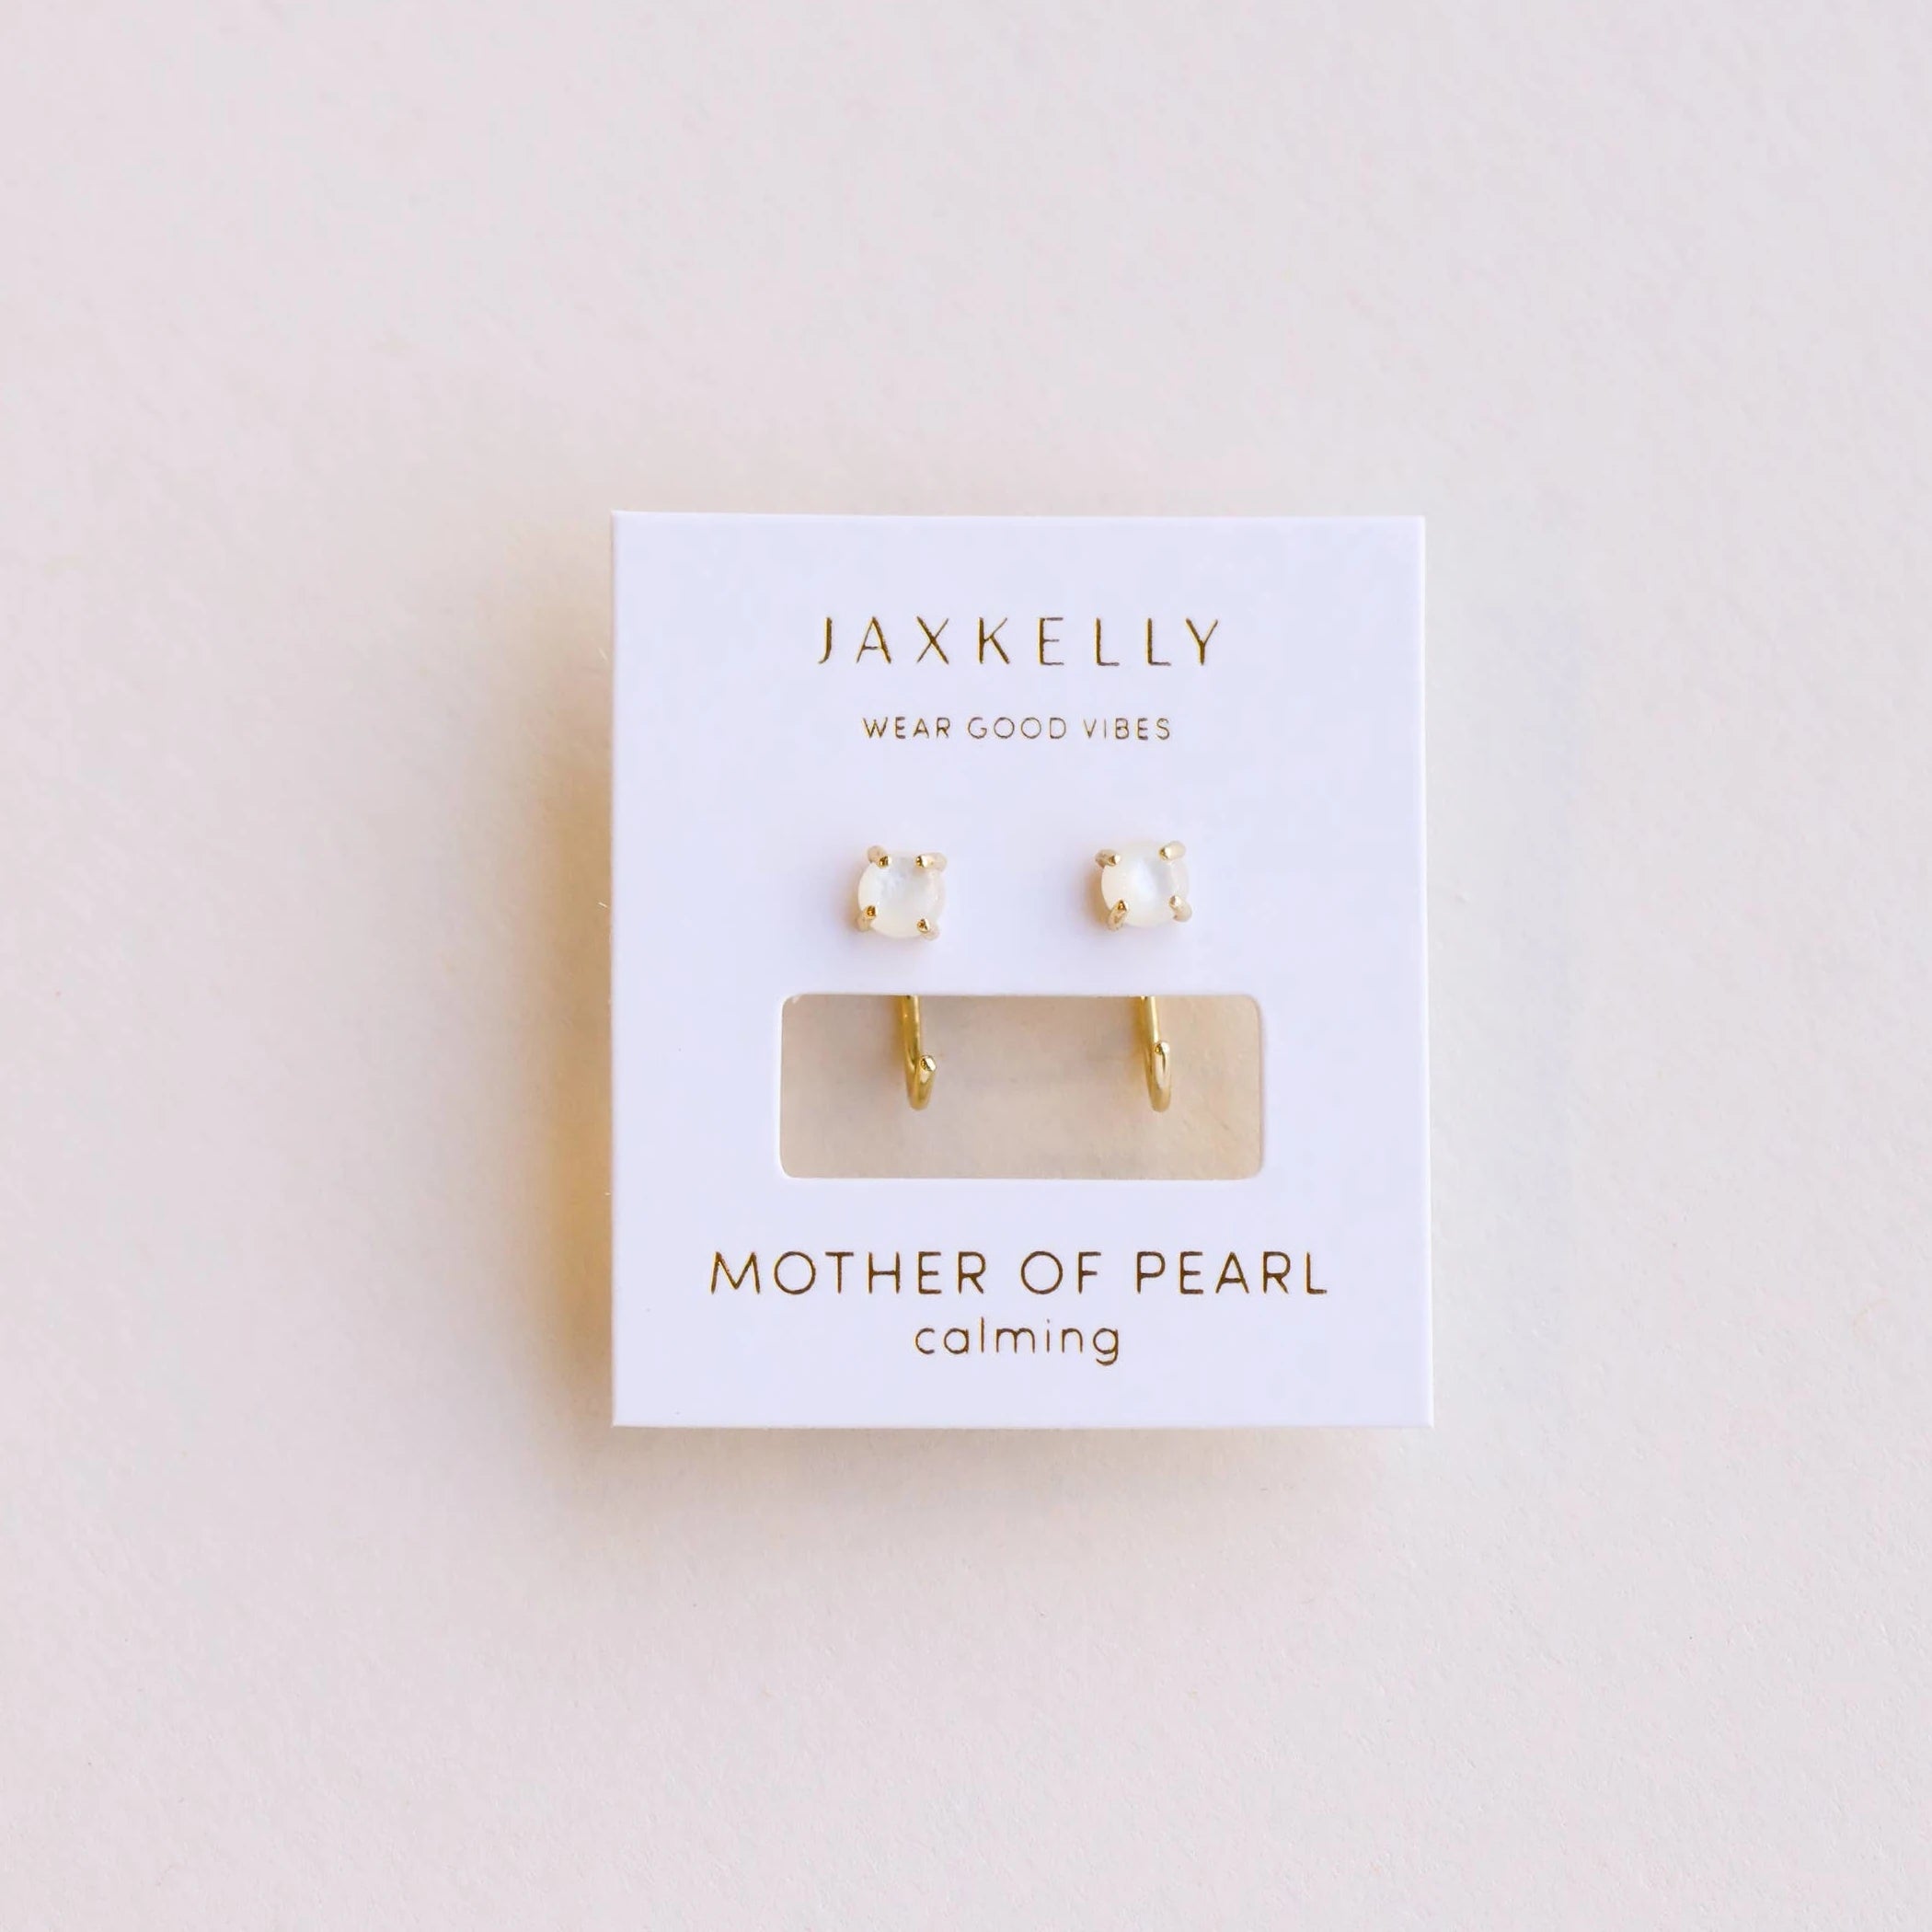 JaxKelly mother of pearl huggies earrings. 